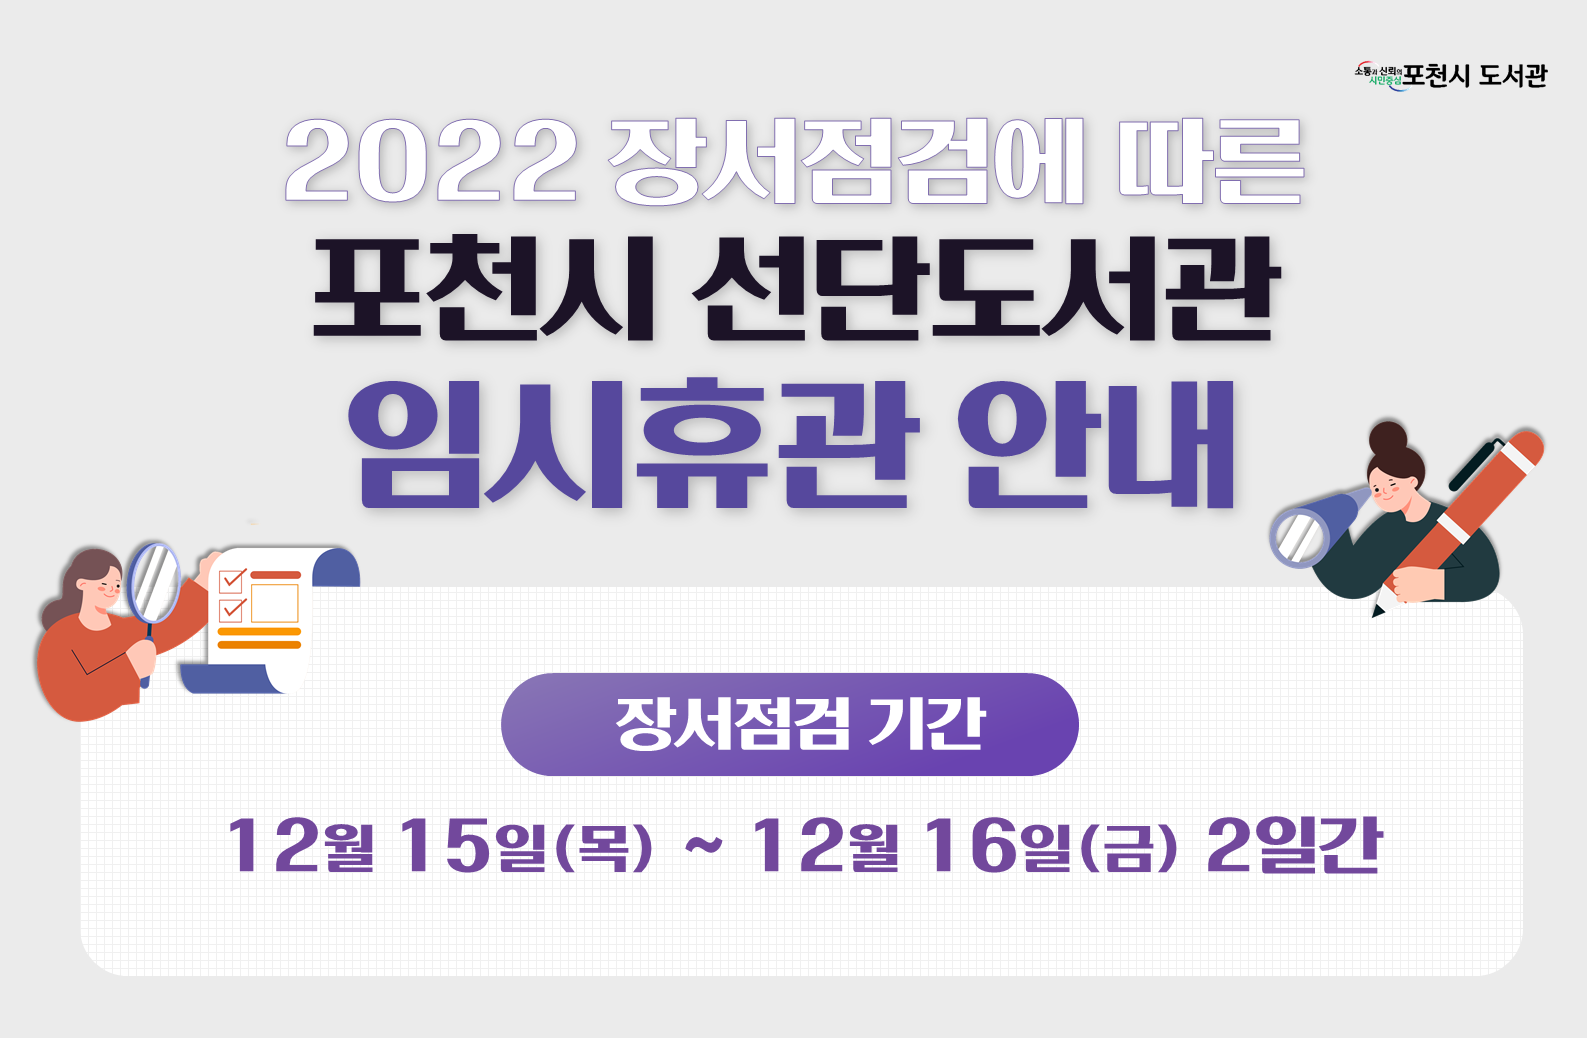 2022 장서점검 임시휴관 안내(선단:12월 15일(목) ~ 12월 16일(금) 2일간)
